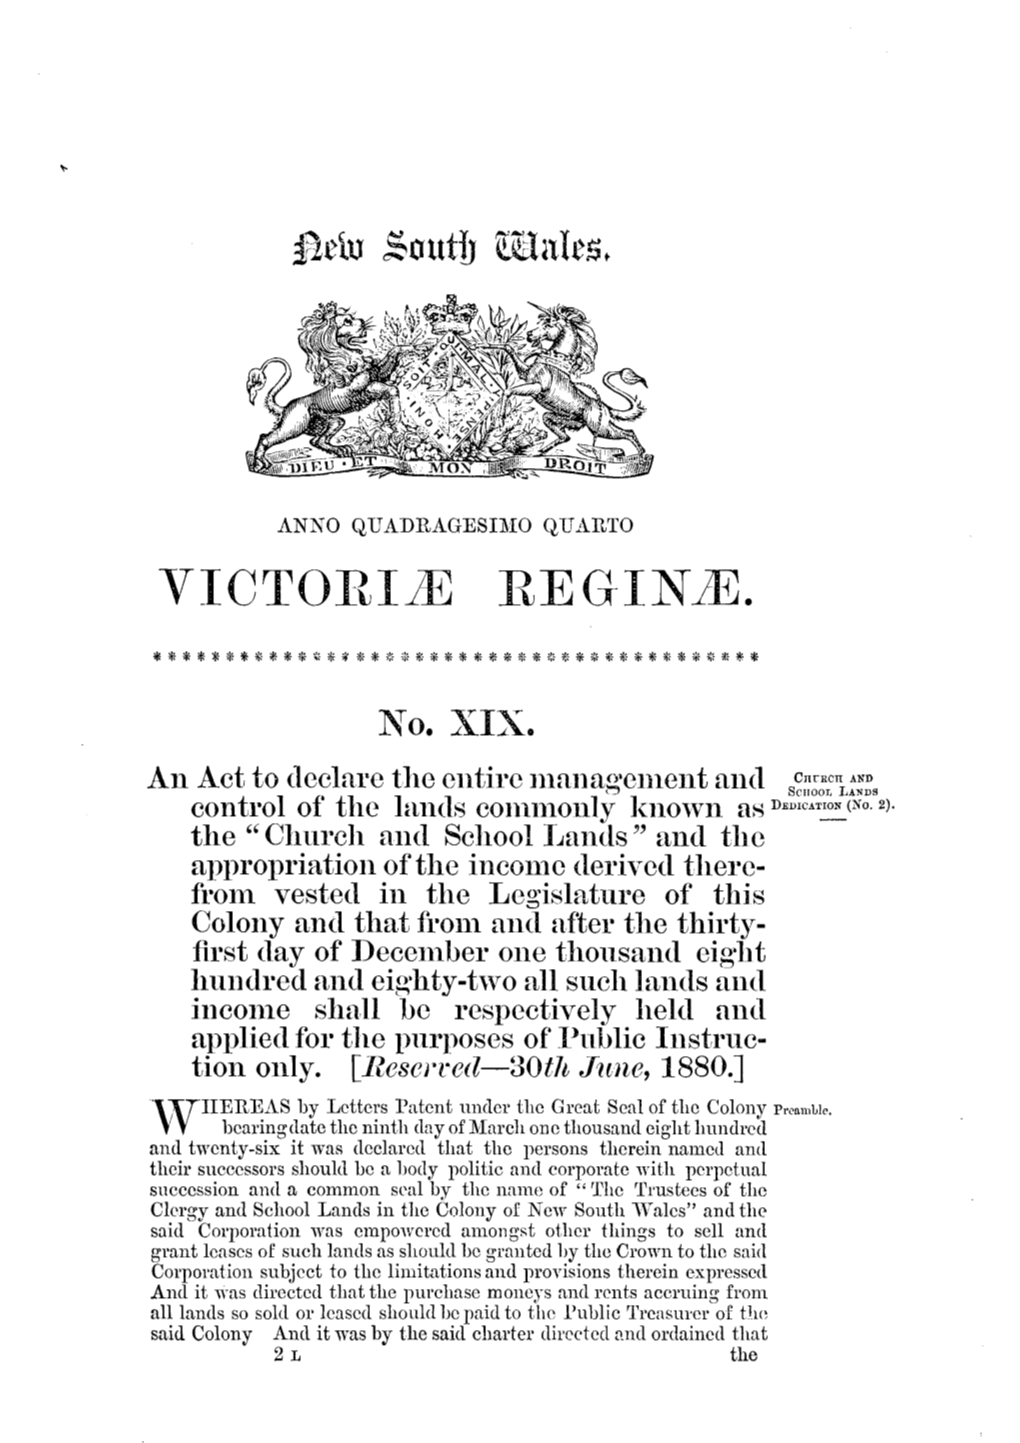 Victoria Regime